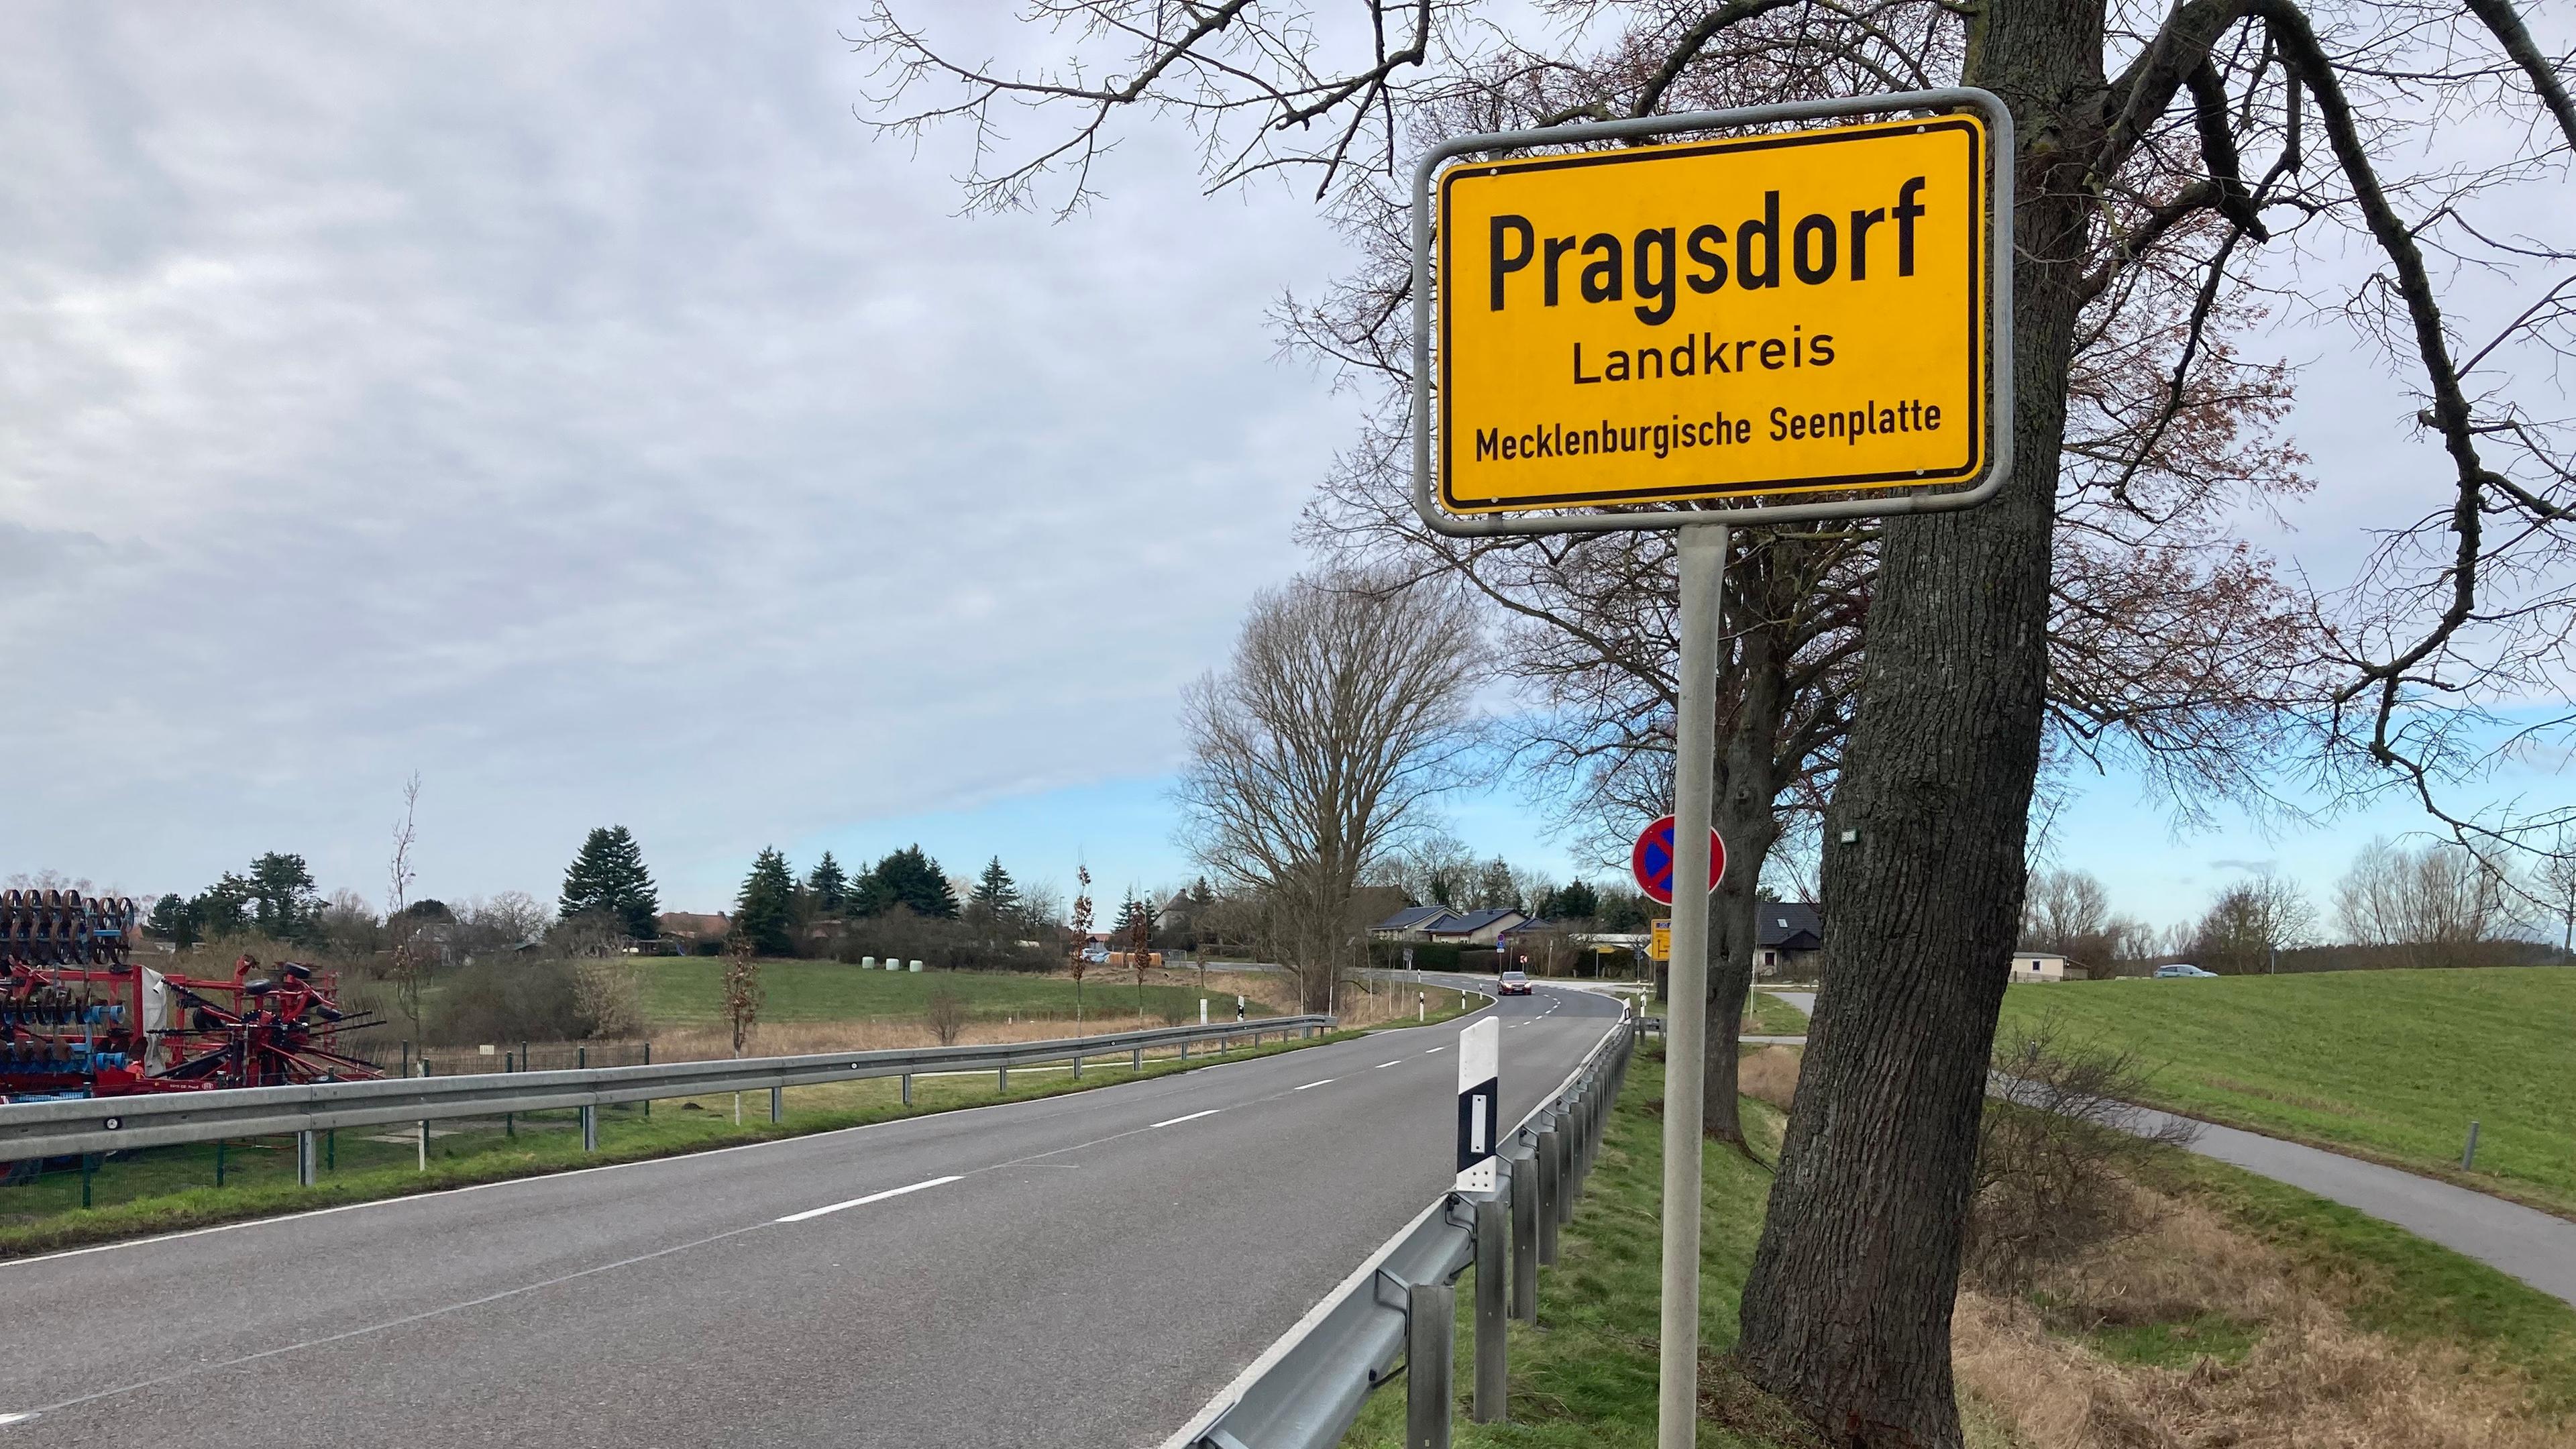 Mecklenburg-Vorpommern, Pragsdorf: Das Ortseingangsschild der Gemeinde Pragsdorf im Landkreis Mecklenburgische Seenplatte befindet sich an einer Straße.